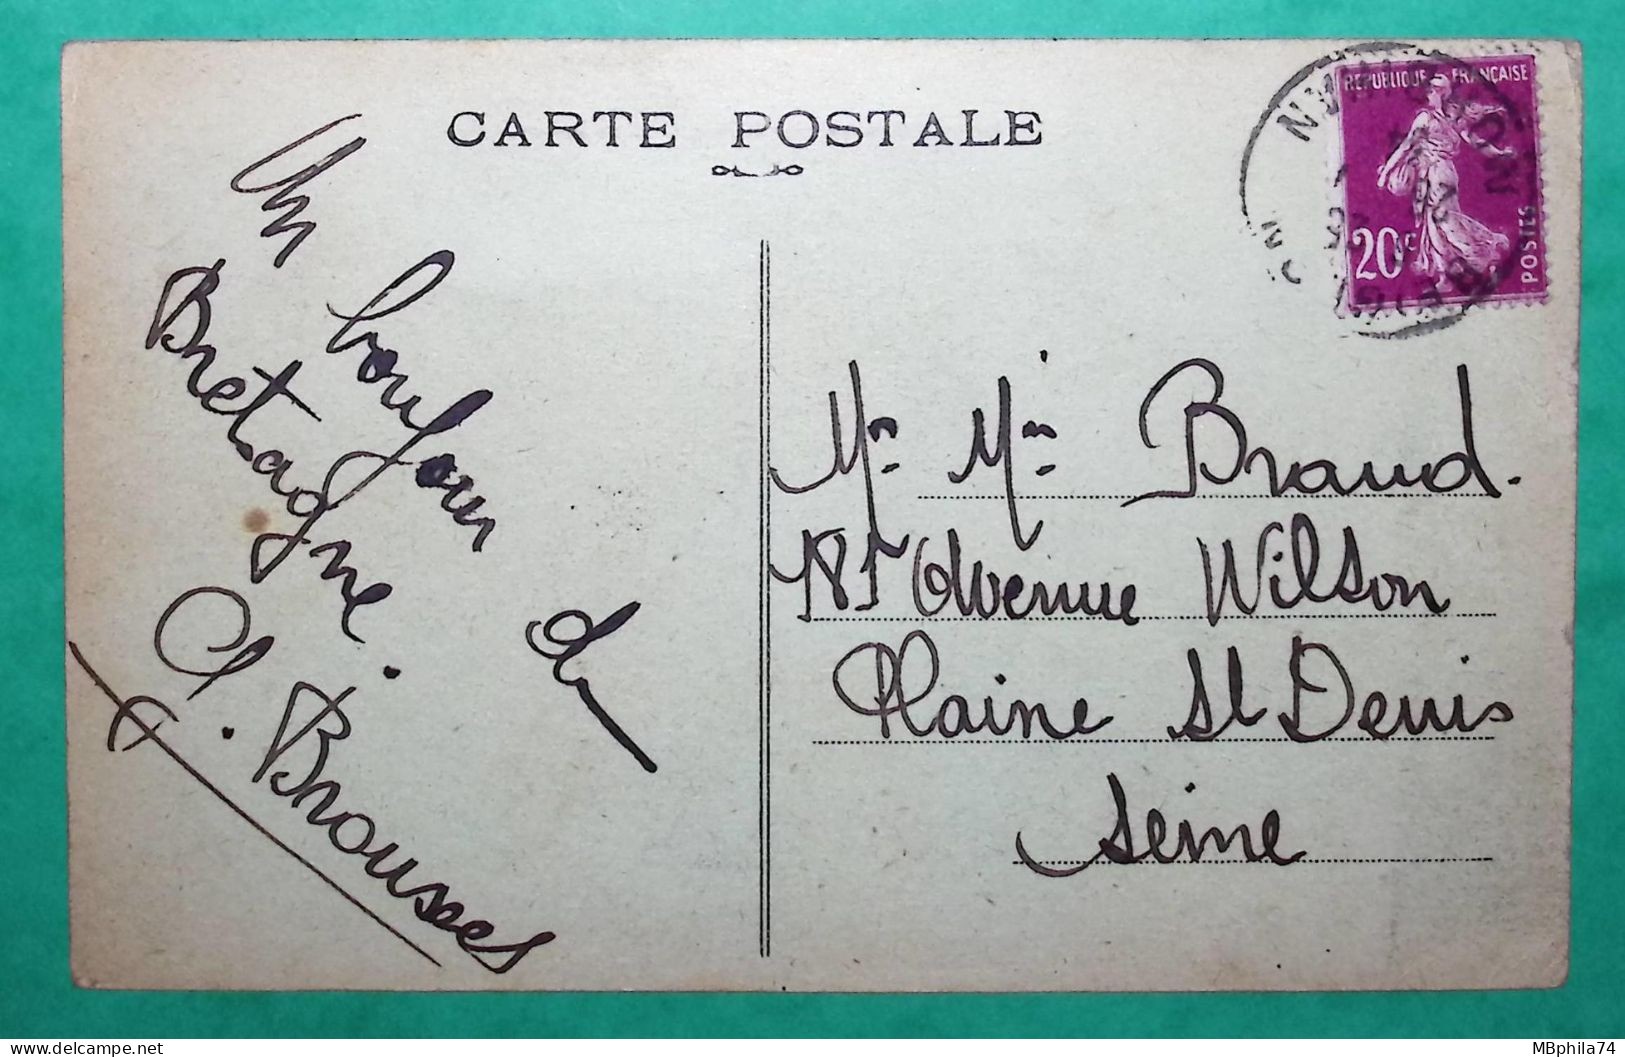 CARTE POSTALE BEIGNON MORBIHAN LE CALVAIRE ET LA POSTE POUR LA PLAINE ST DENIS SEINE 1934 POST CARD FRANCE - Correos & Carteros